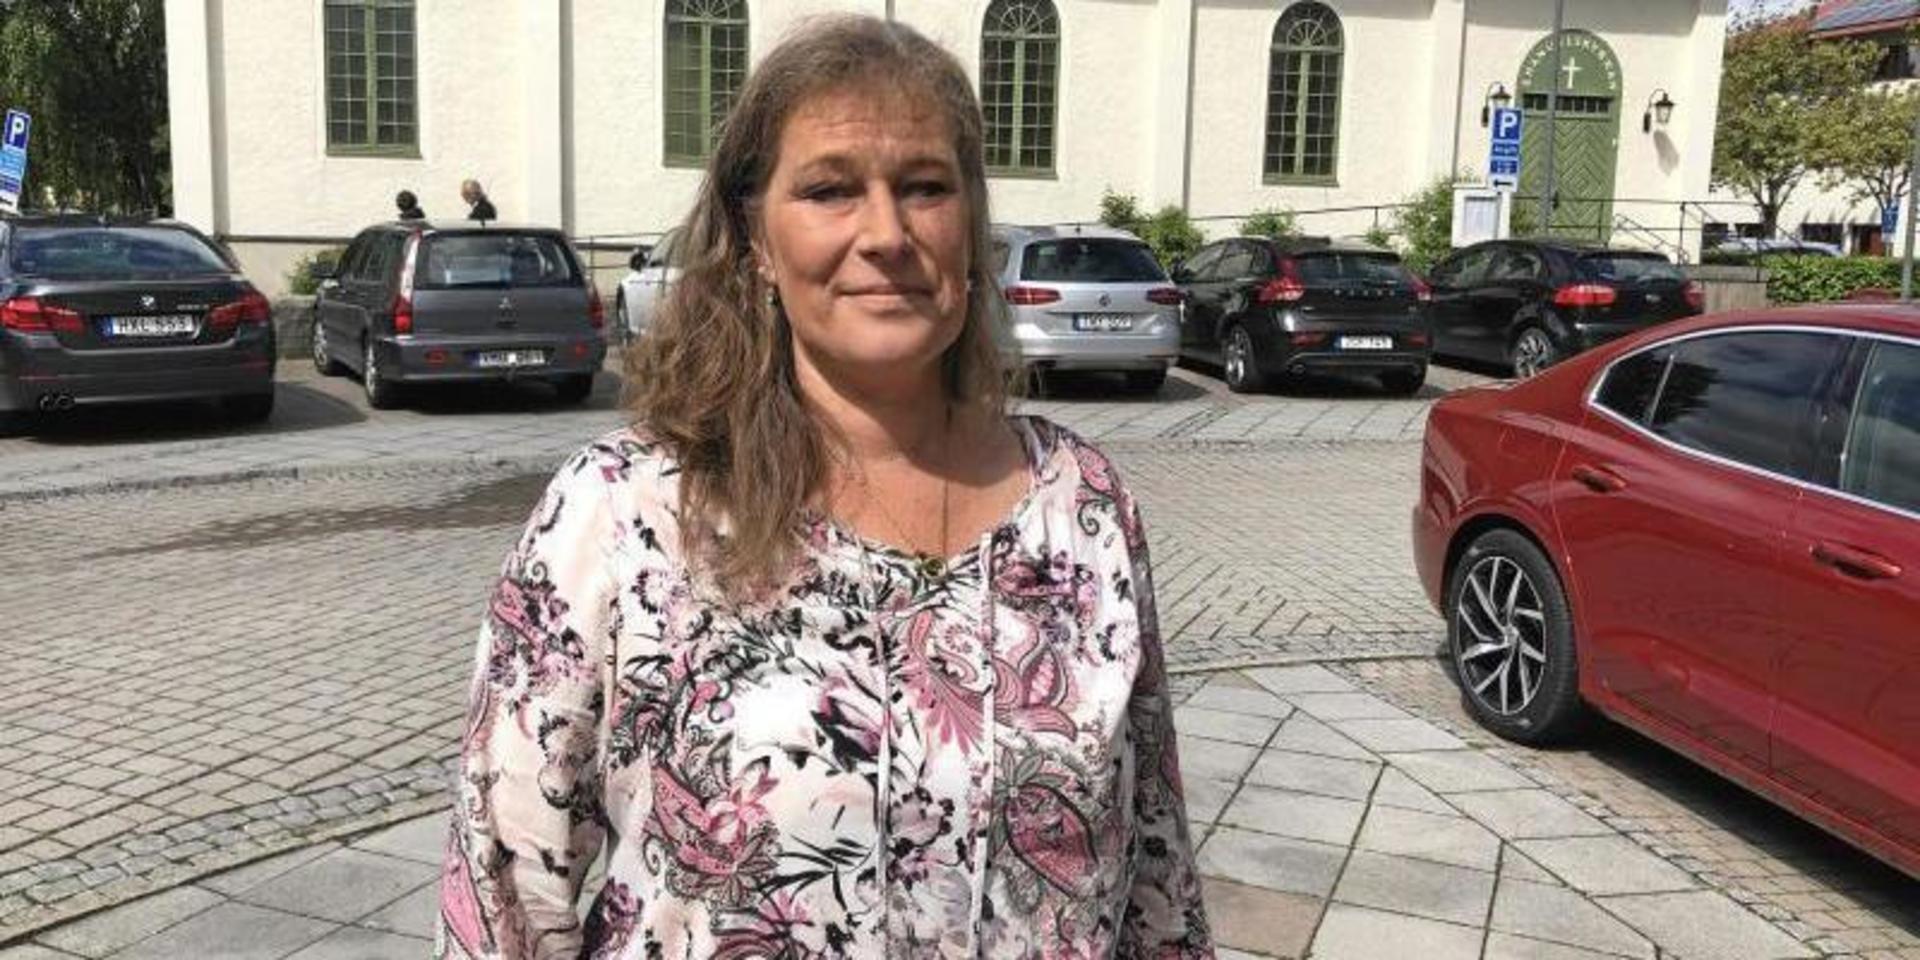 Lisa Andersson (M) är högste politiker i Kungsbacka. Hon har all anledning att dra lite extra på smilbanden i och med att kommunen är tredje bäst i landet, enligt en ny mätning. 